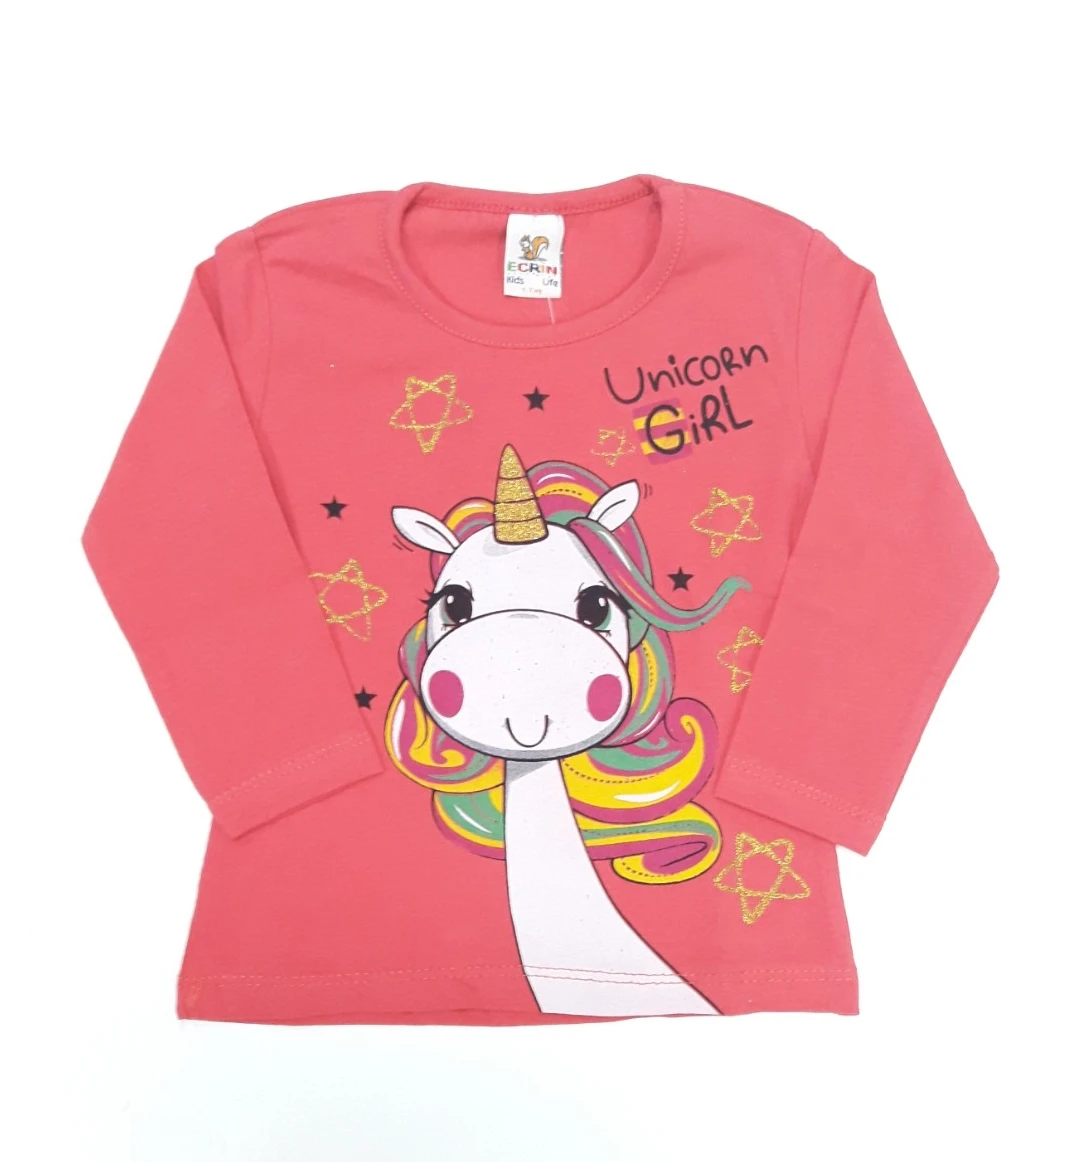 Unicorn majica za devojčicu